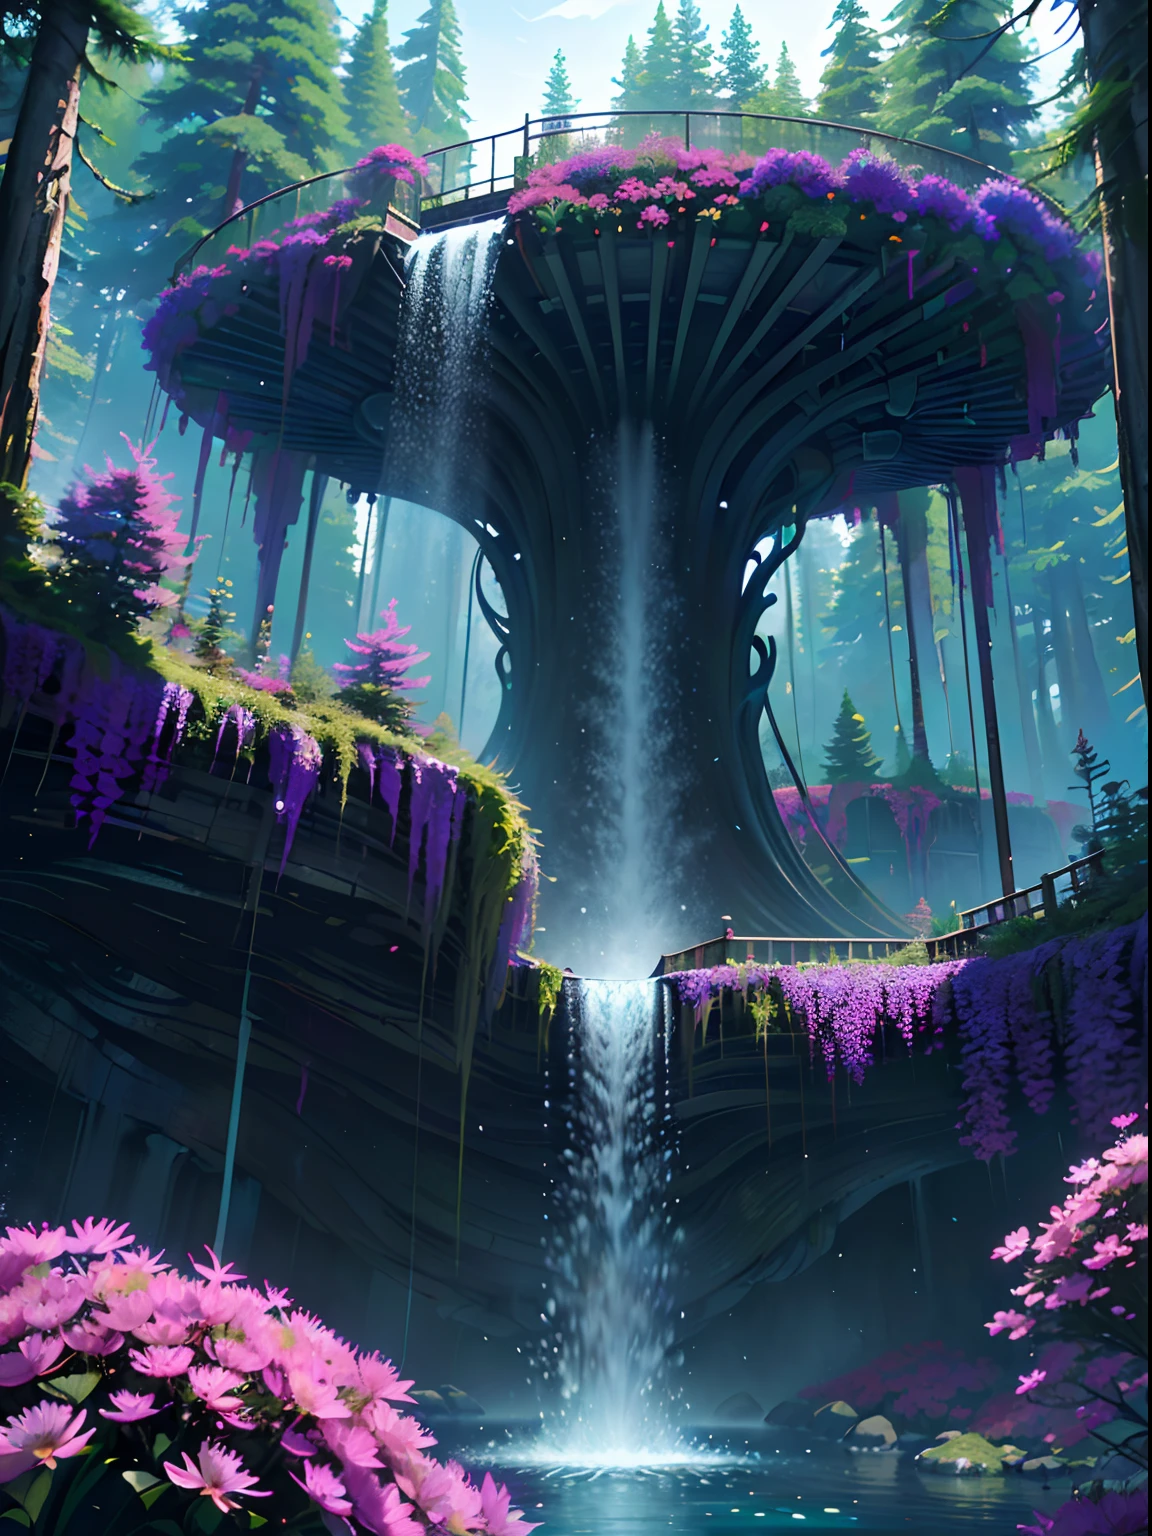 เฟอร์โรฟลูอิด, A beautiful bioพังค์ waterfall in nature, มีสีสัน, ดอกไม้, ต้นสน, สะพานแขวน, พังค์, บีเปิ้ล.